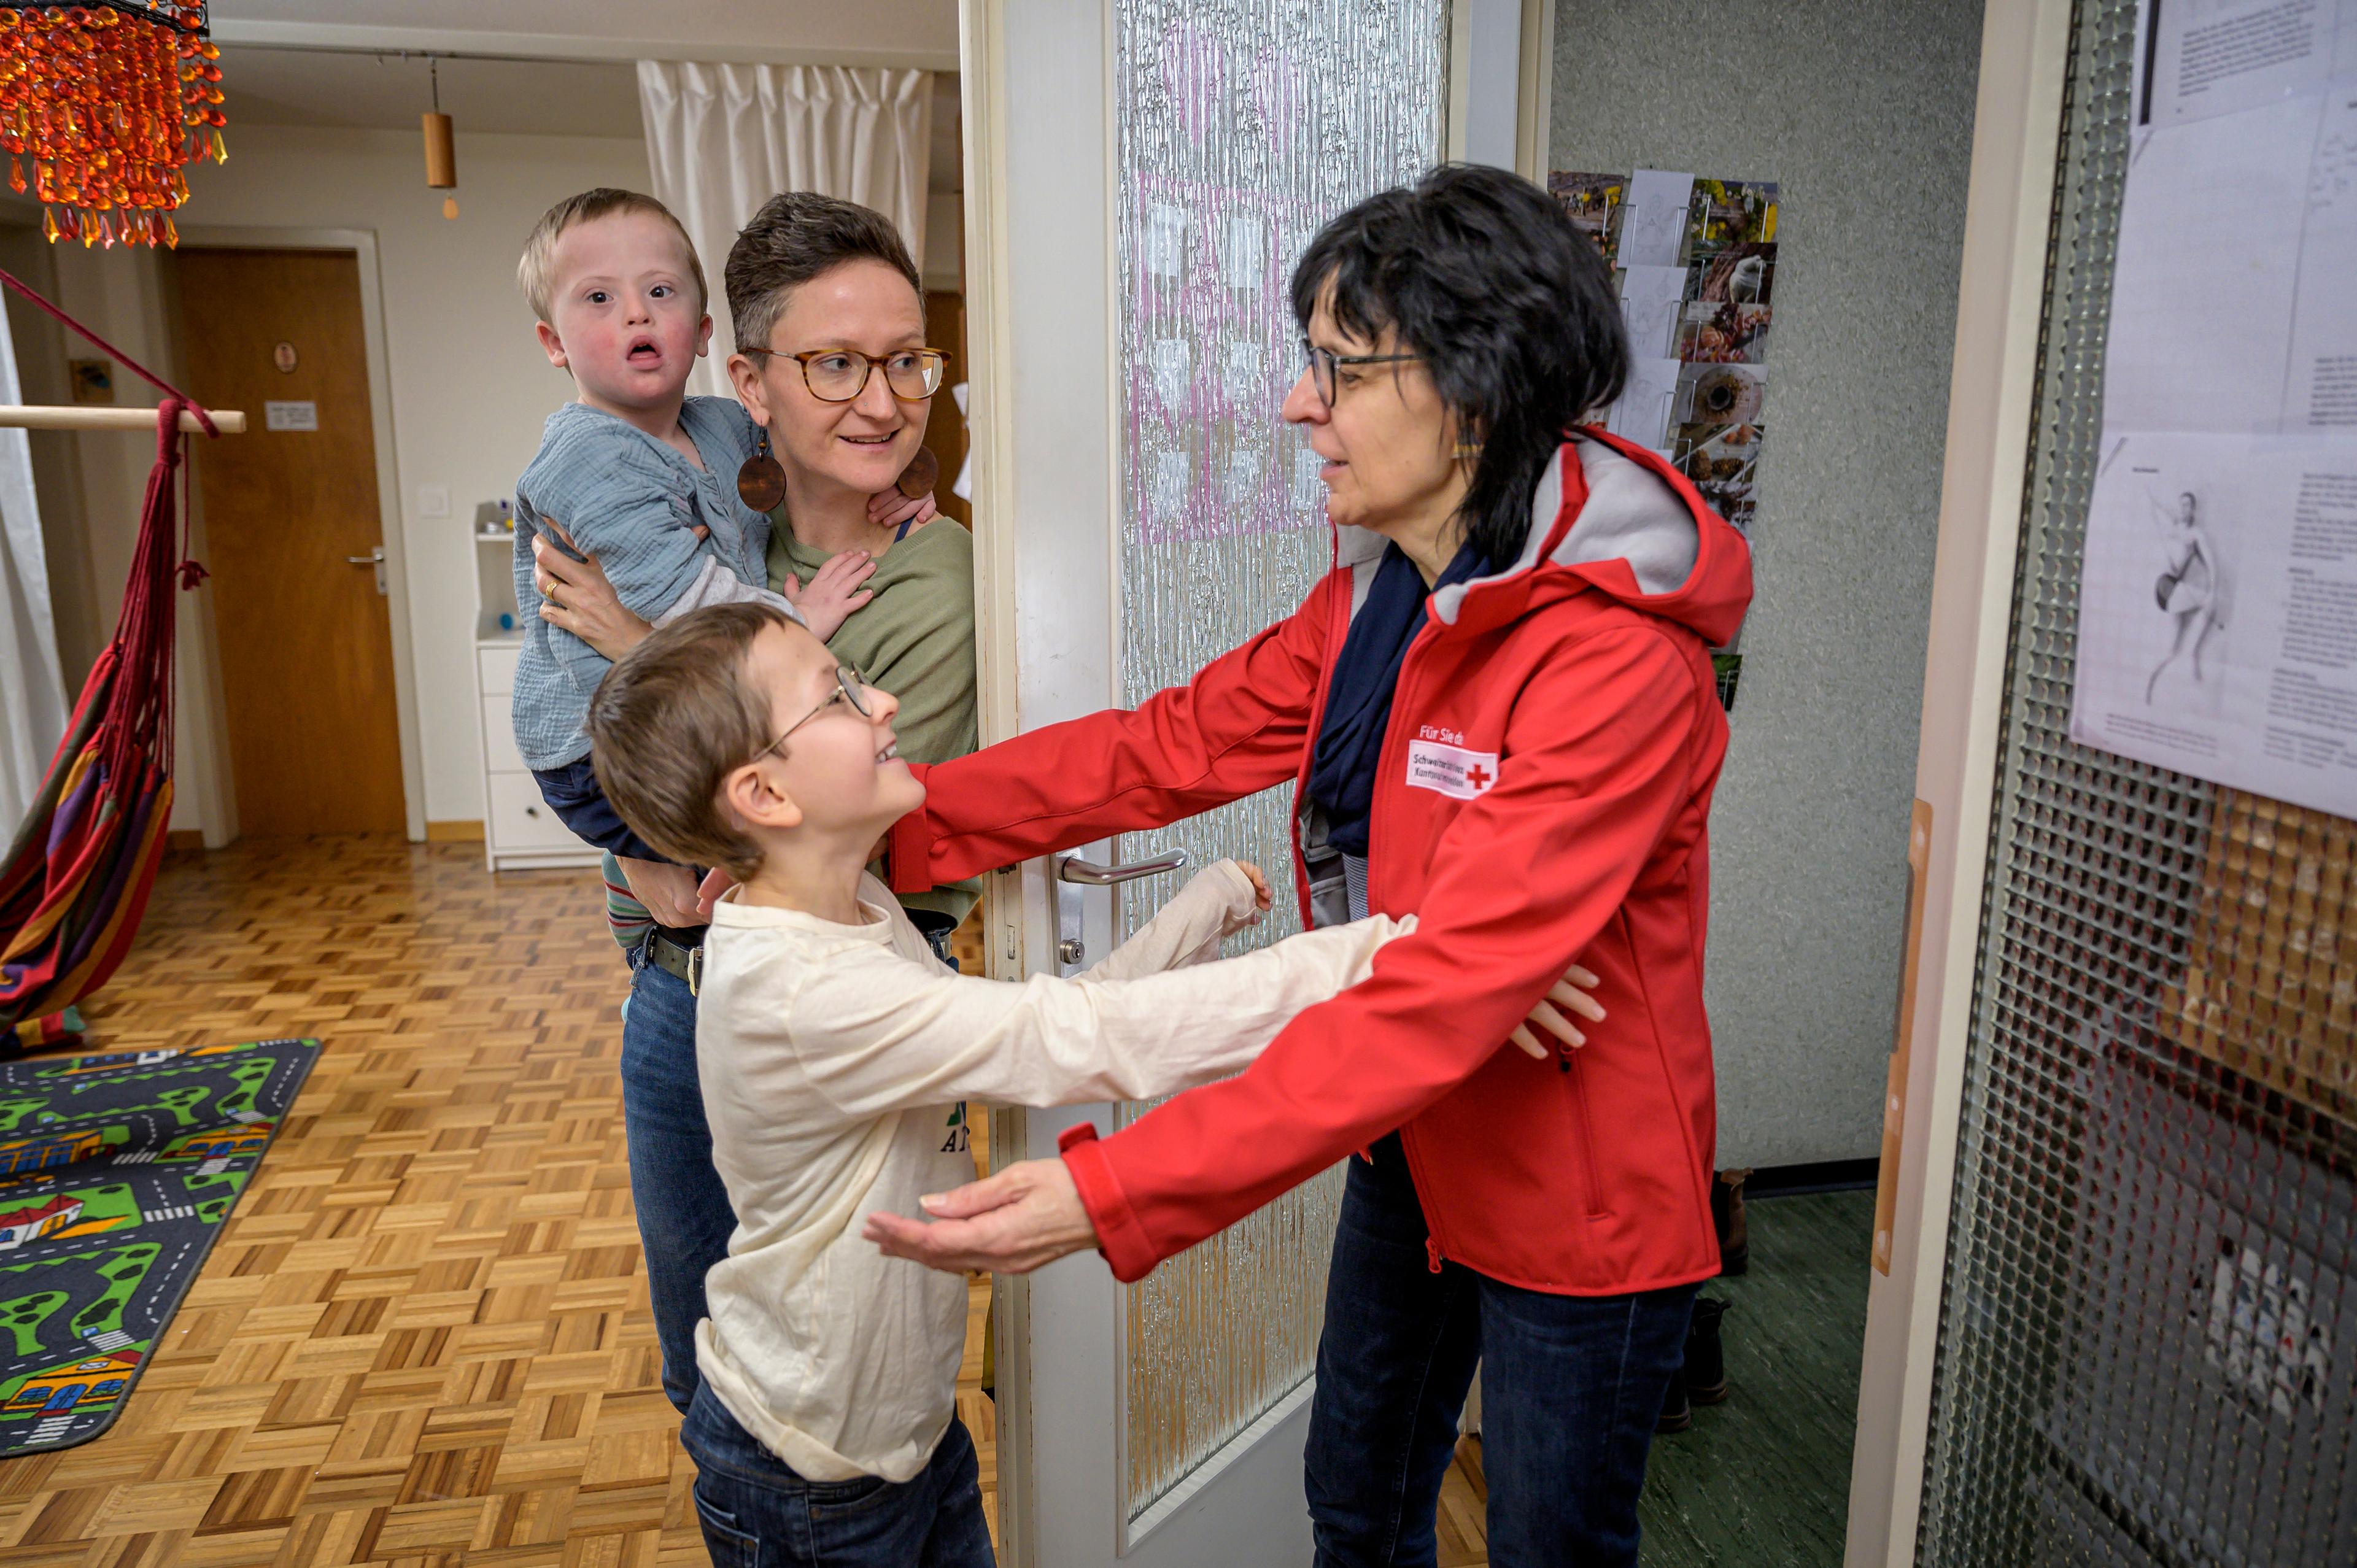 Mutter mit kleinem Kind mit Trisomie 21 im Arm. ein etwa 10jähriges Kind begrüsst die Frau mit der roten Jacke und dem Rotkreuzlogo.